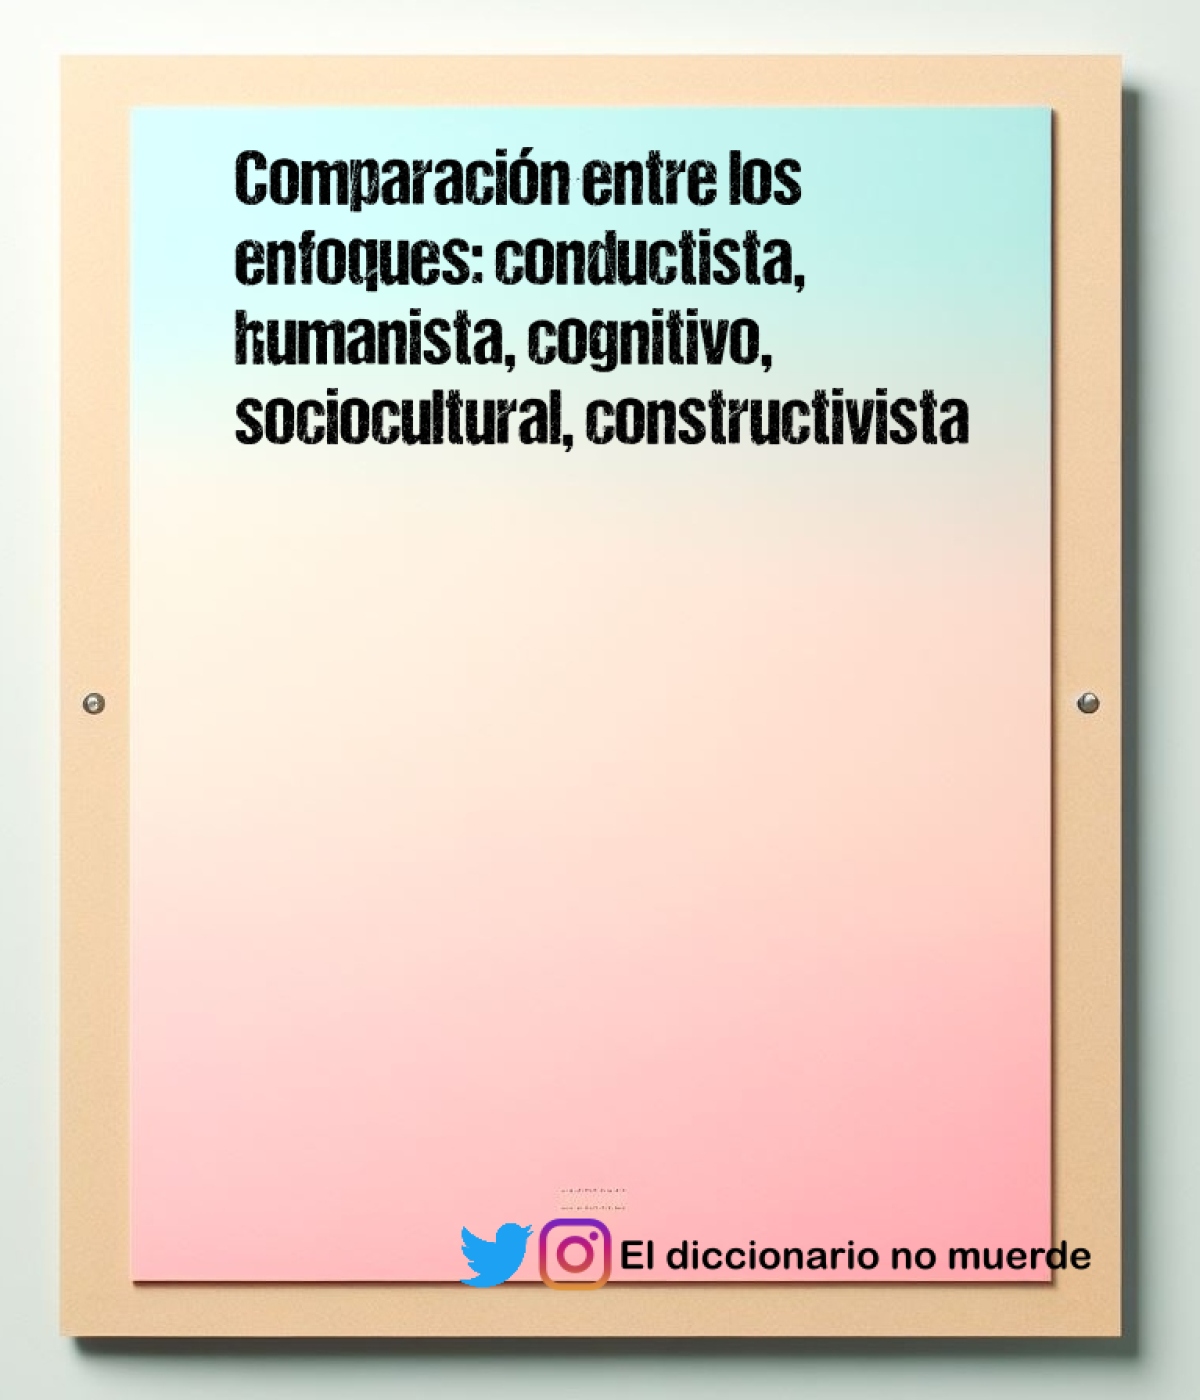 Comparación entre los enfoques: conductista, humanista, cognitivo, sociocultural, constructivista